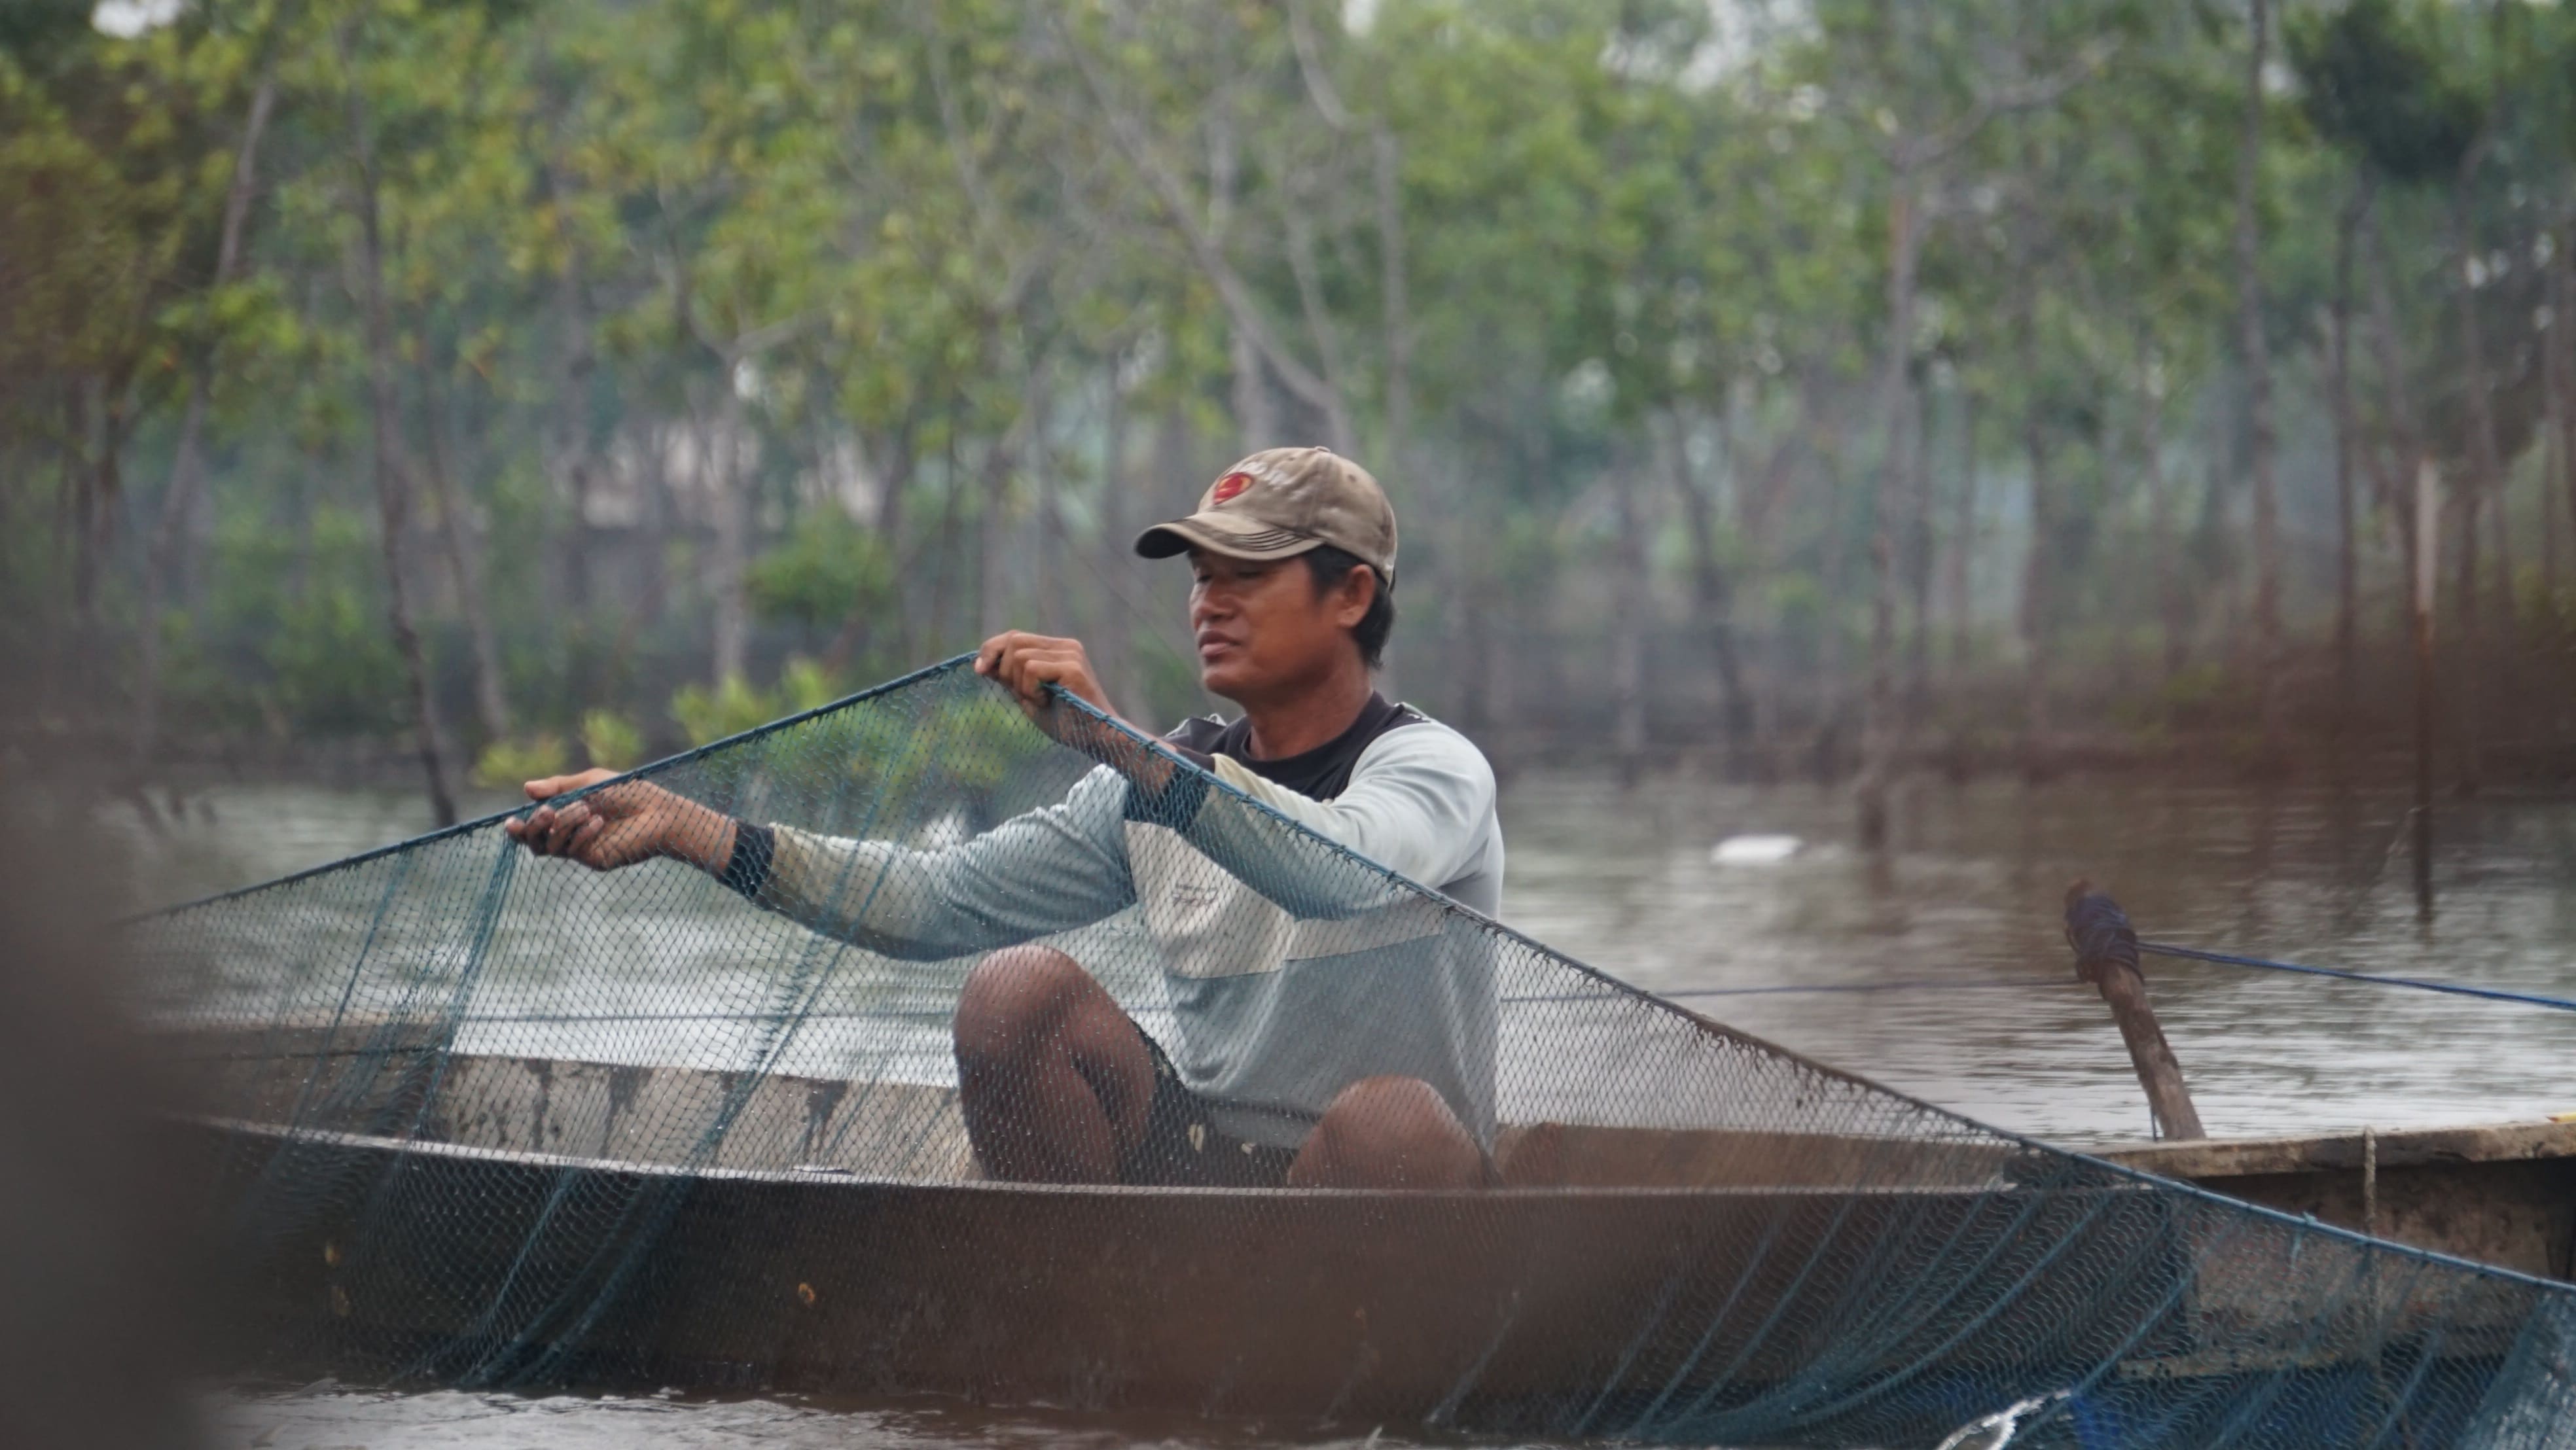 Seorang pembudidaya ikan bandeng di daerah pesisir yang sedang melakukan kegiatan panen menggunakan jaring diatas perahu